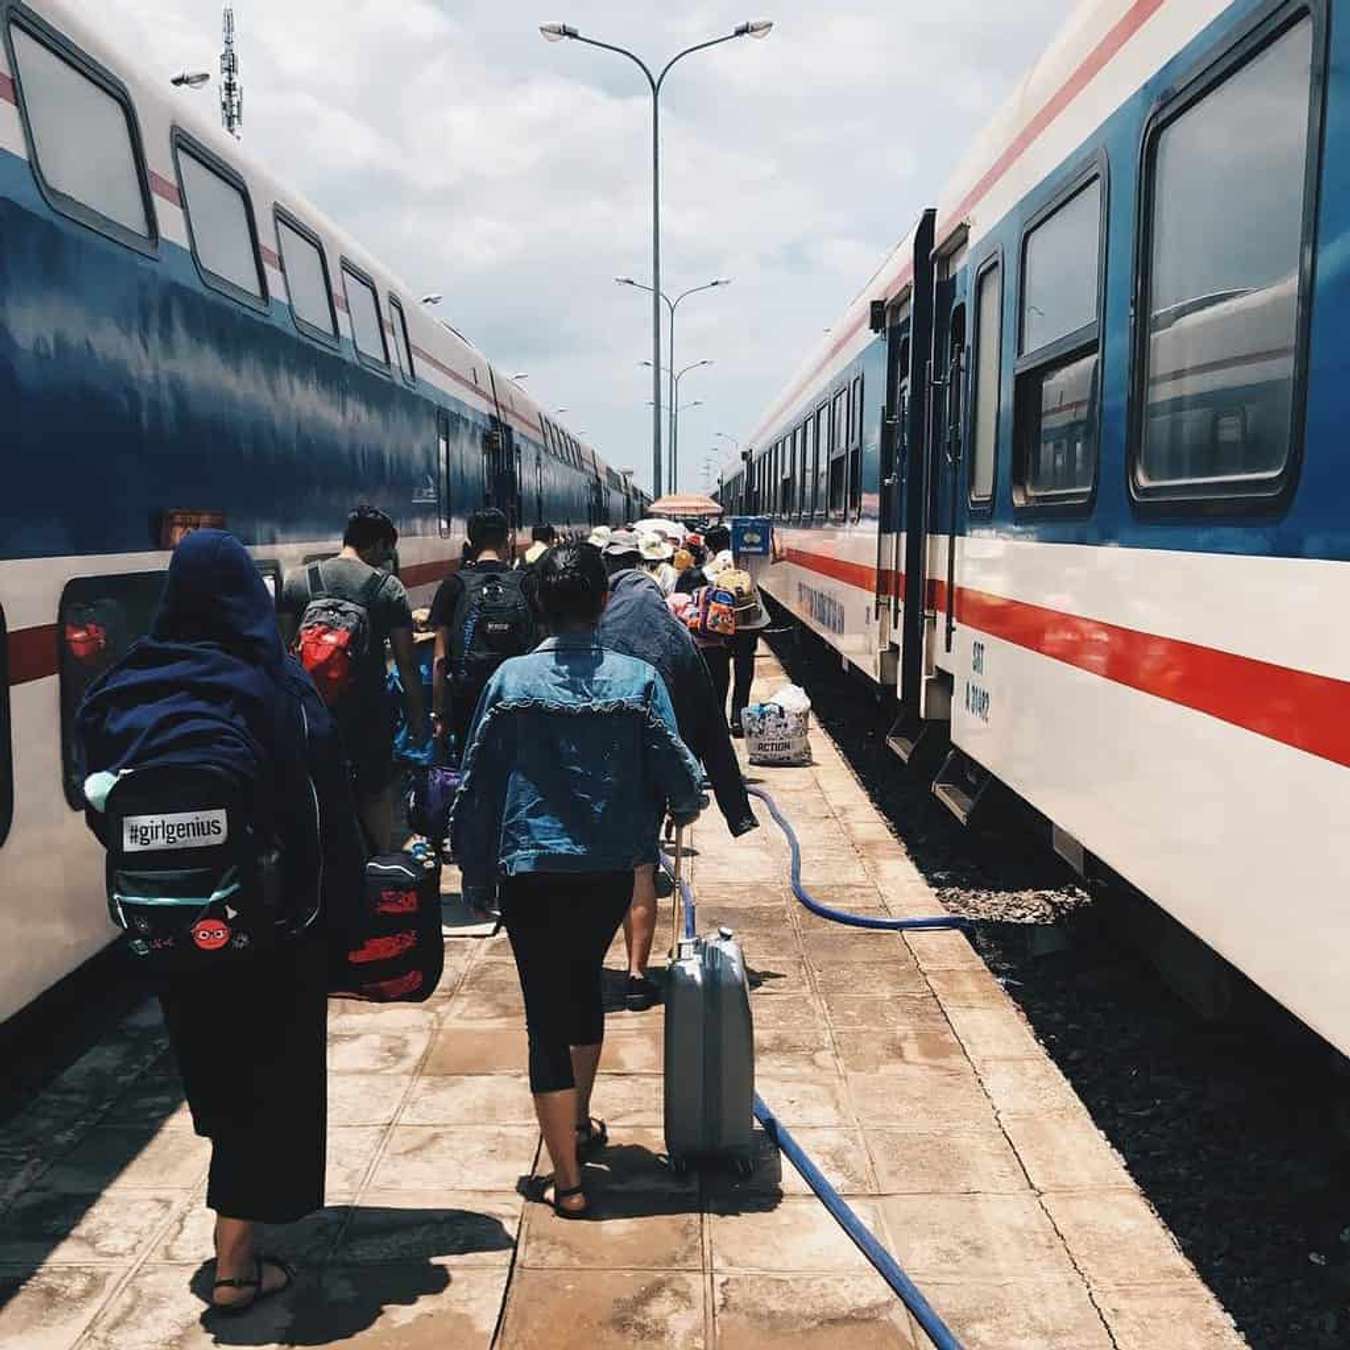 du lịch bằng xe lửa ở ga Phan Thiết